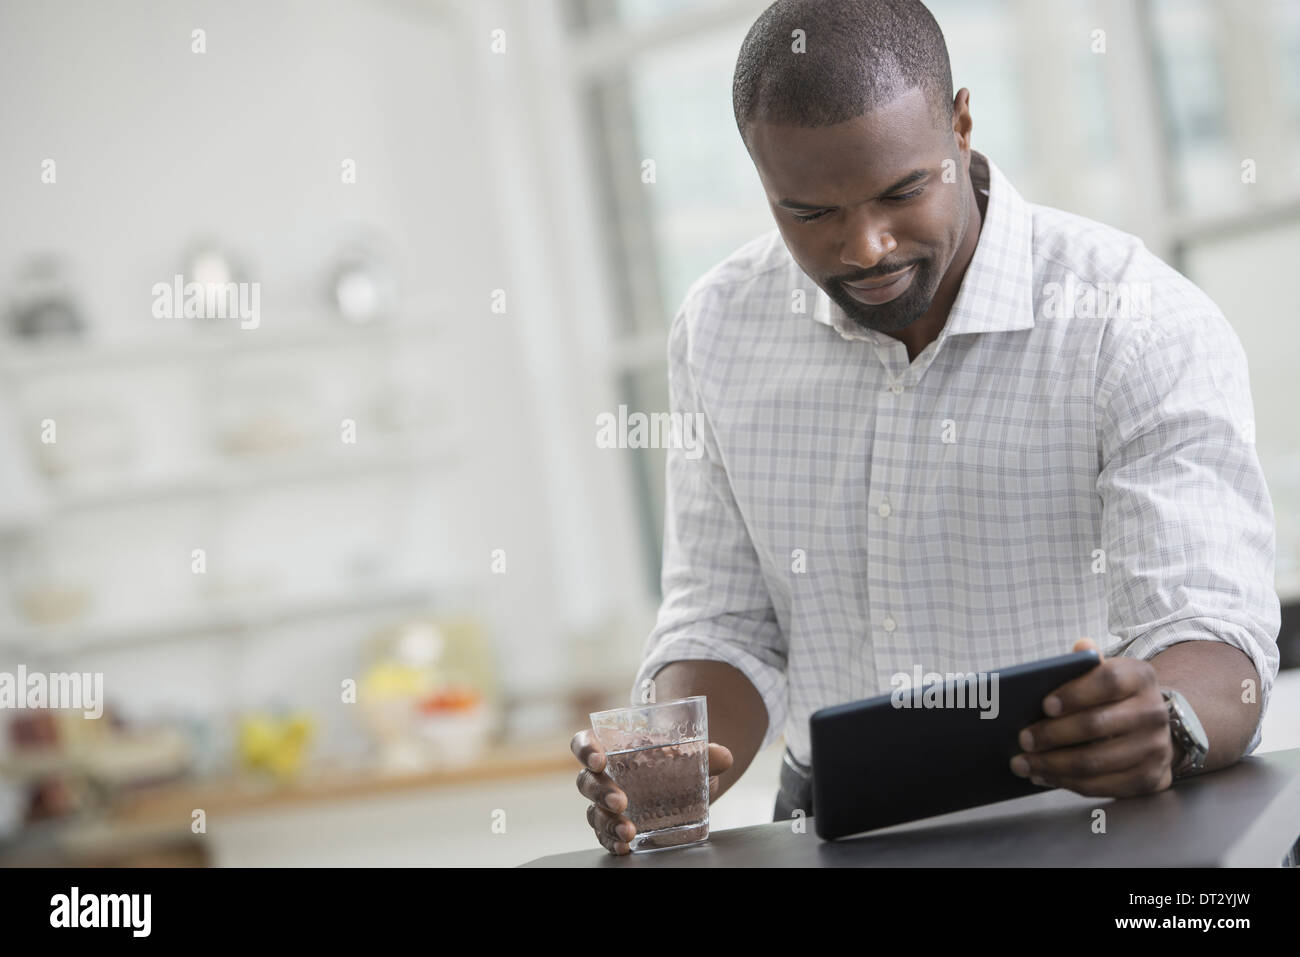 Junge Berufstätige Arbeit A Geschäftsmann in einem offenem Kragen sitzen mit einem Glas Wasser mit einem digitalen tablet Stockfoto